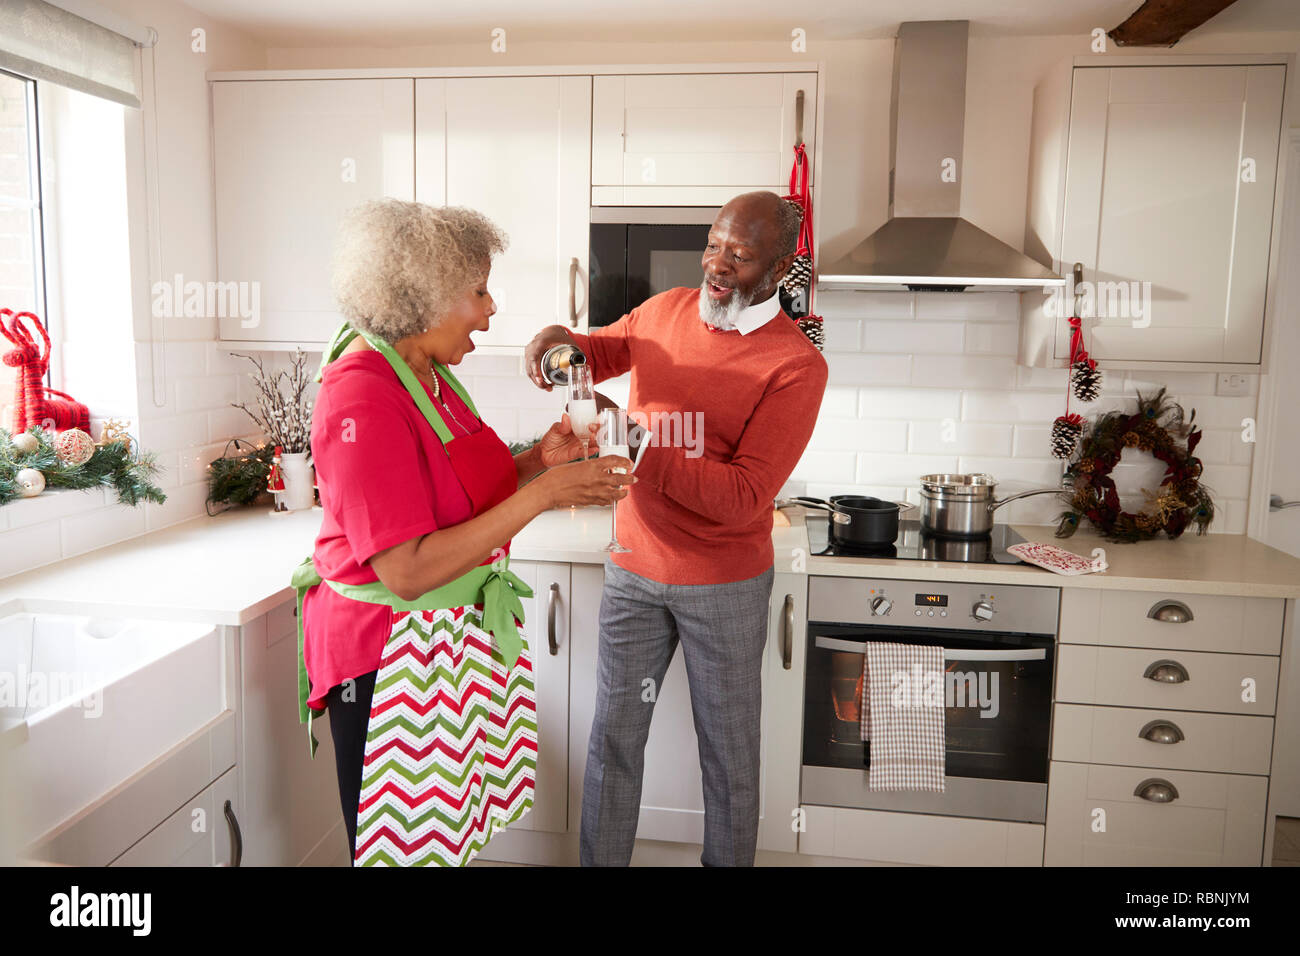 Hombre negro Senior verter champagne a su compañero en la cocina mientras prepara la cena el día de Navidad, vista lateral Foto de stock